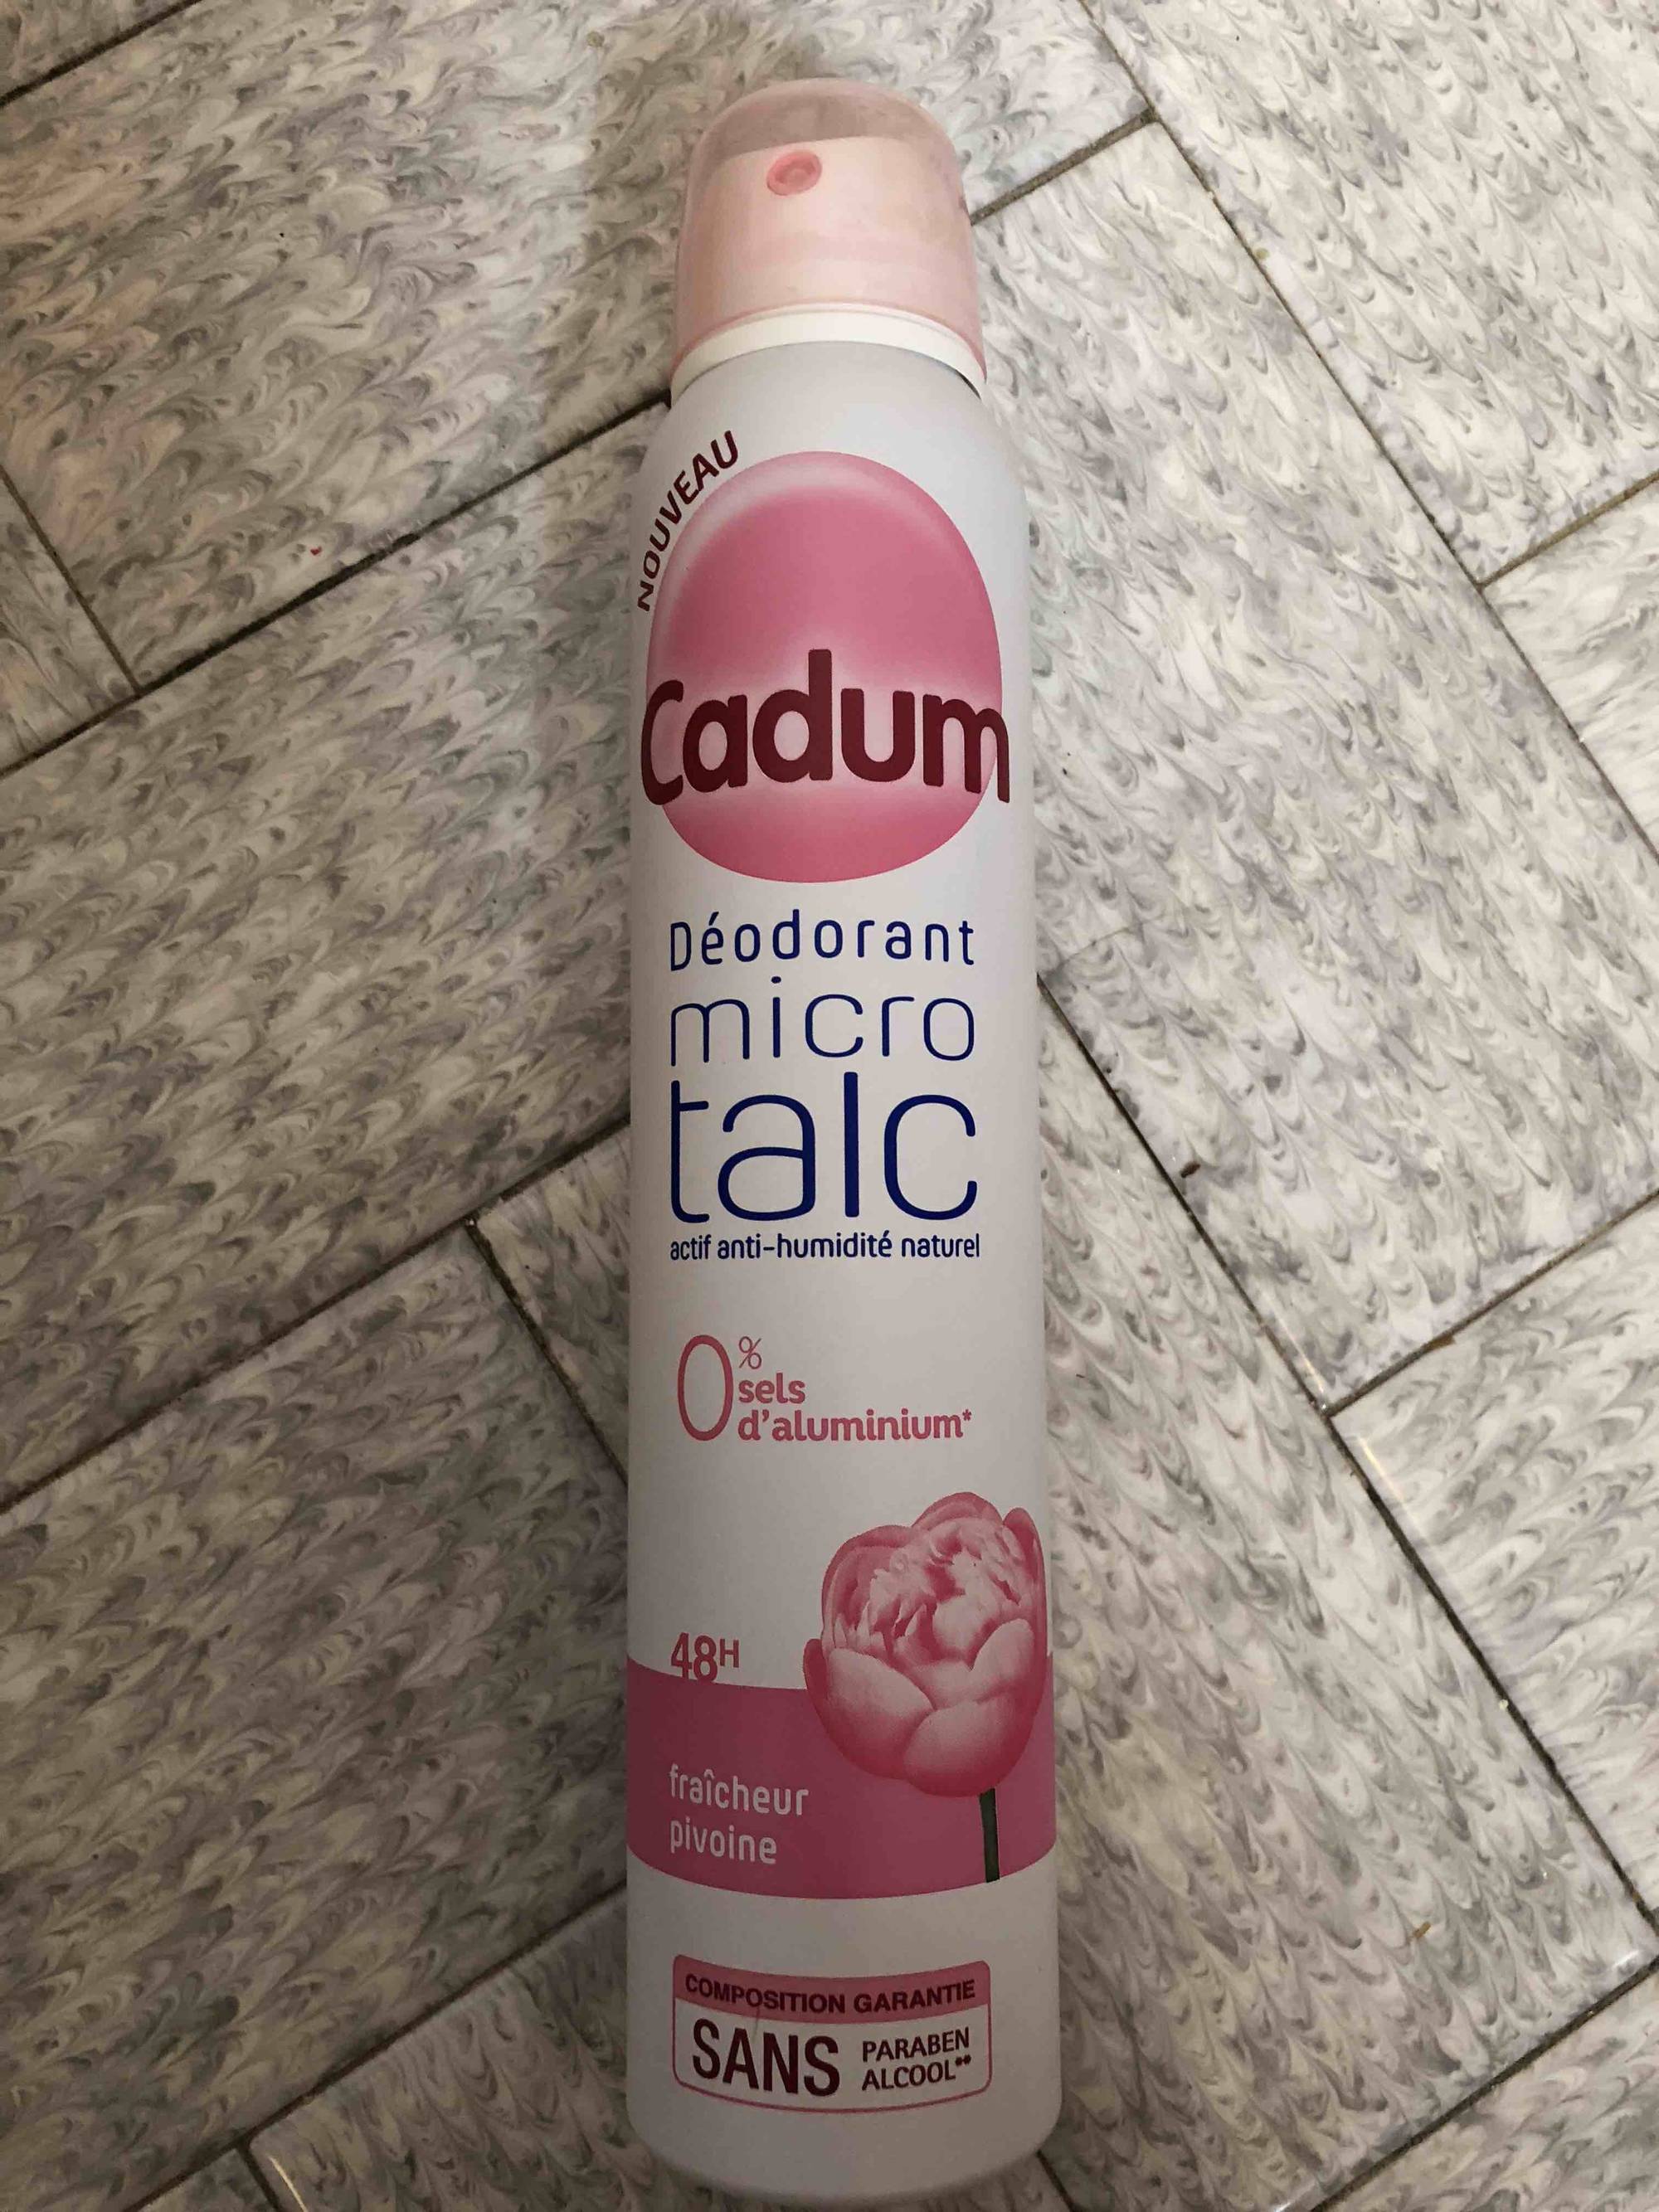 CADUM - Micro talc - Déodorant fraîcheur pivoine 48h